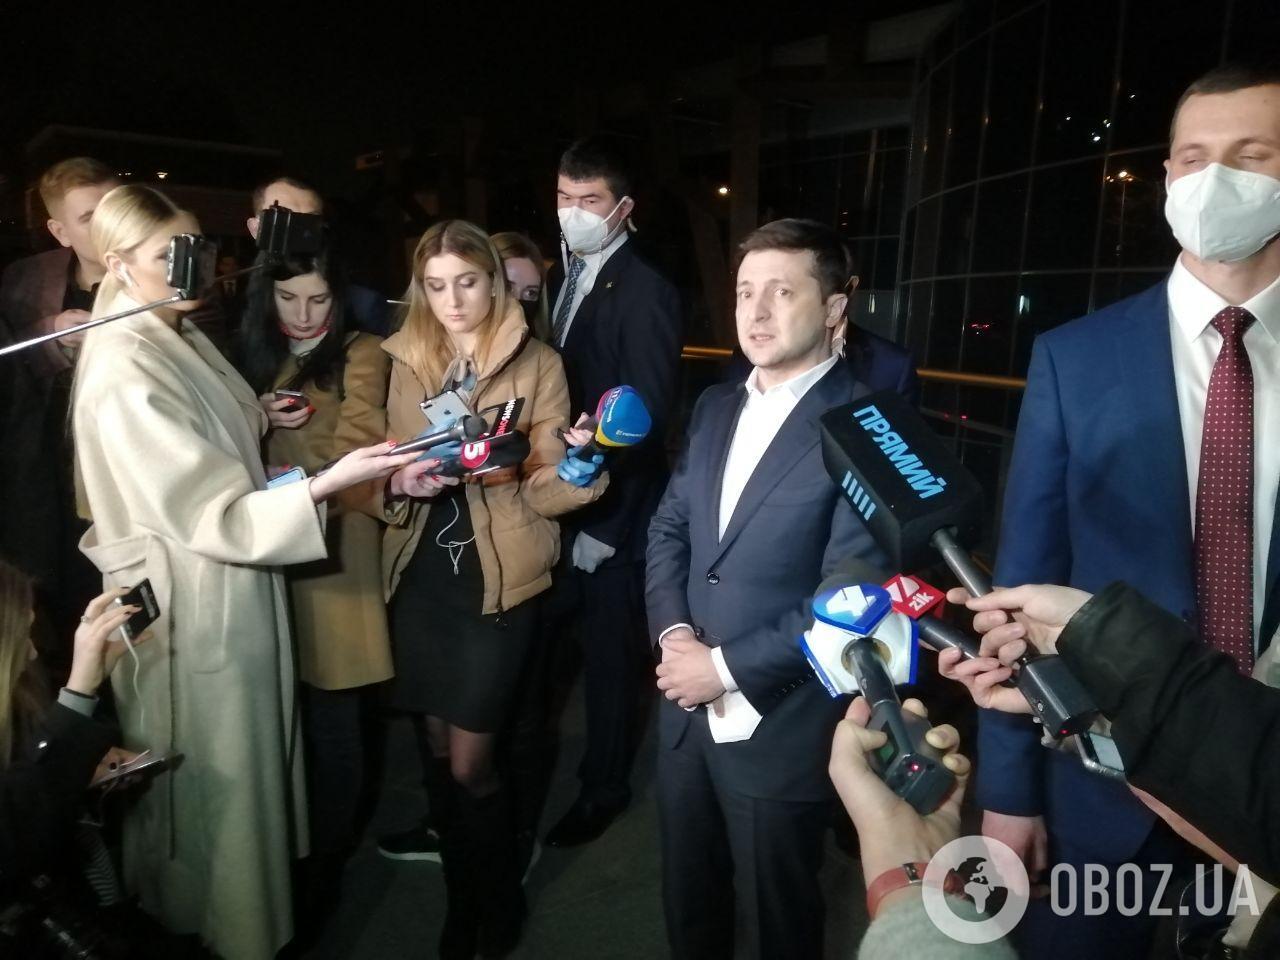 Зеленский прибыл на заседание фракции "Слуга народа"